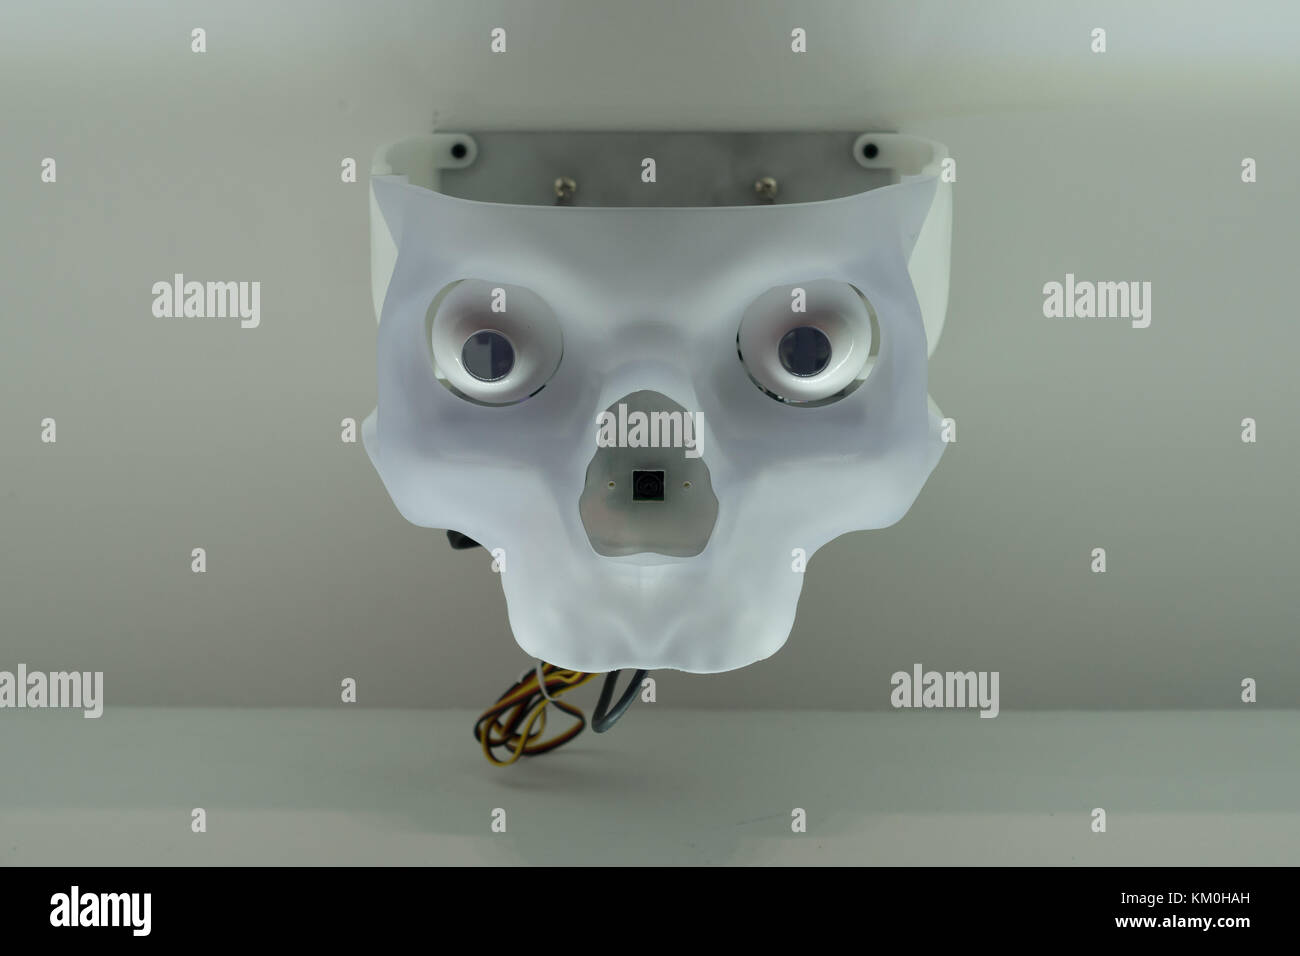 Futuristico teschio umano volto a fissare la telecamera con occhi vuoti Foto Stock